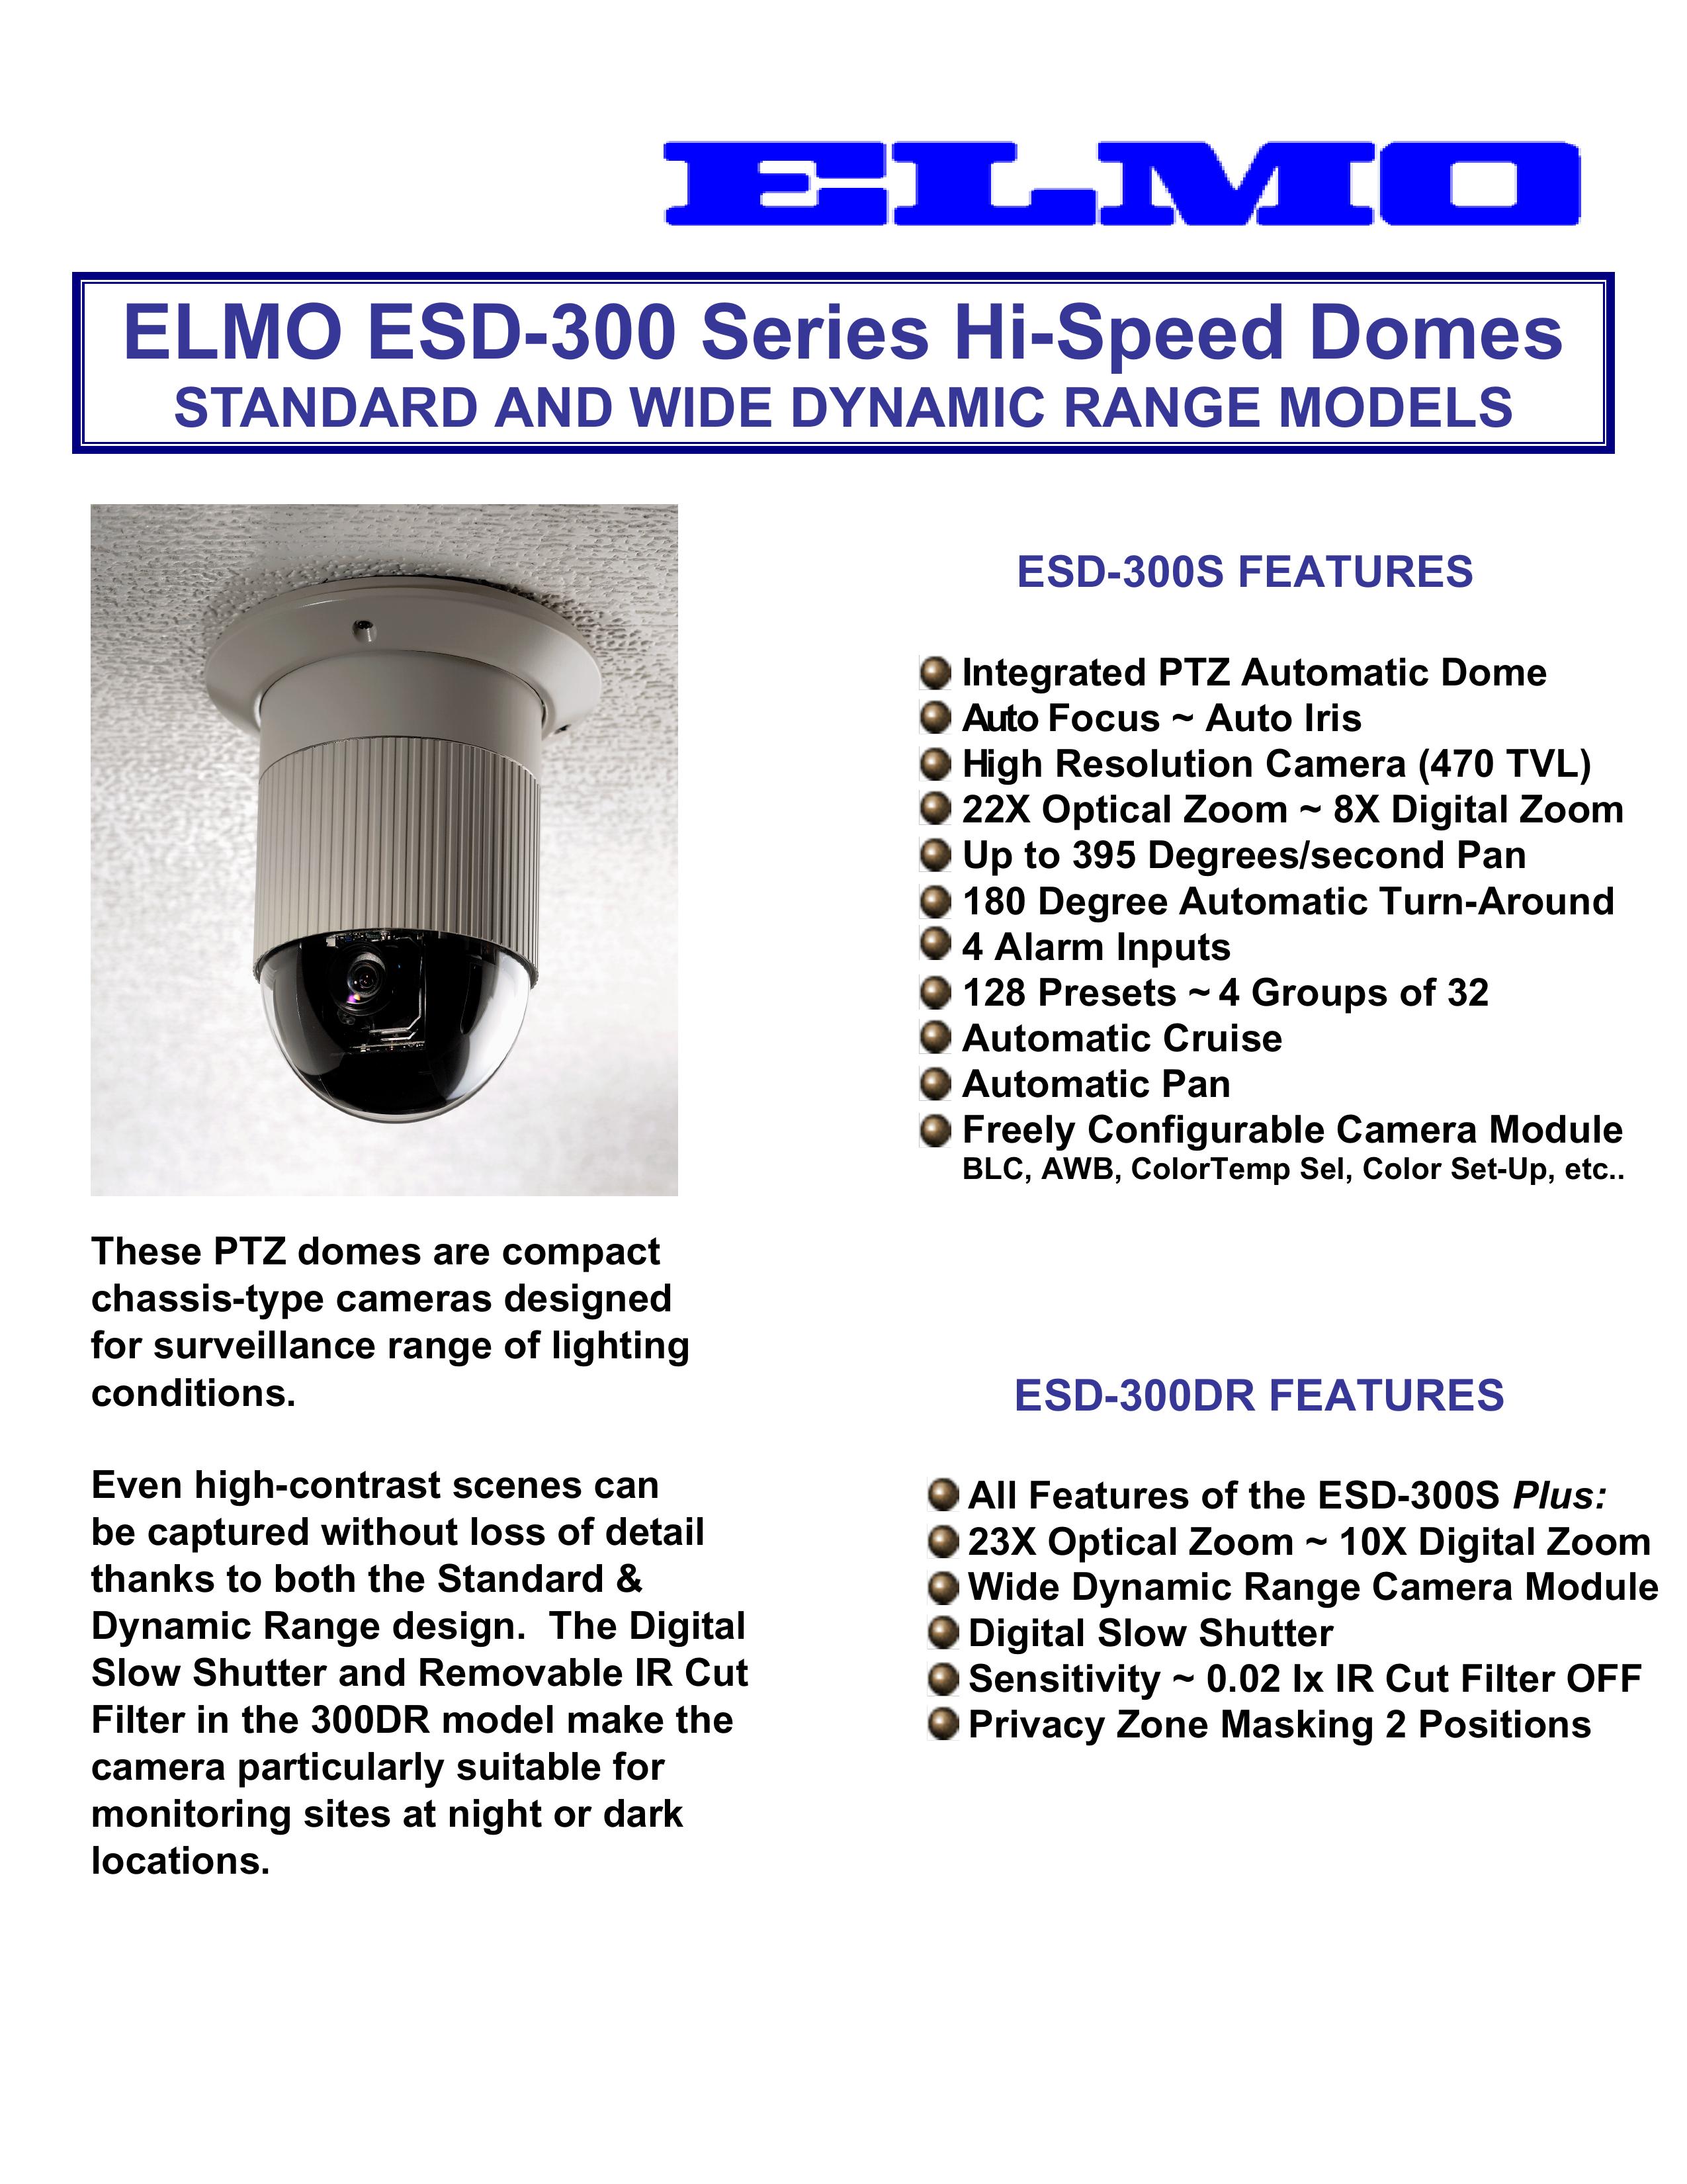 Elmo ESD-300DR Security Camera User Manual